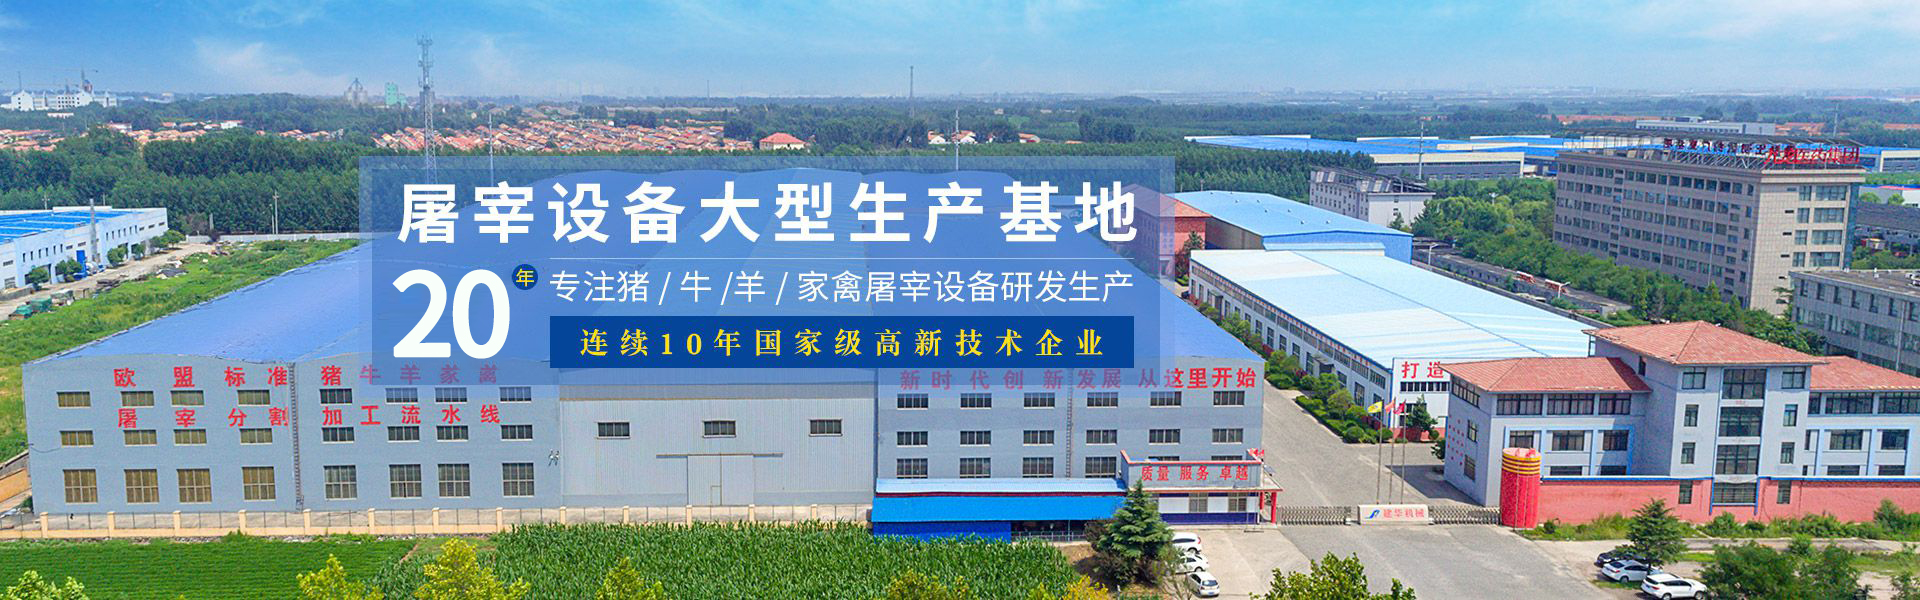 建华机械-屠宰设备大型生产基地，18年专注猪/牛/羊家禽屠宰设备研发生产